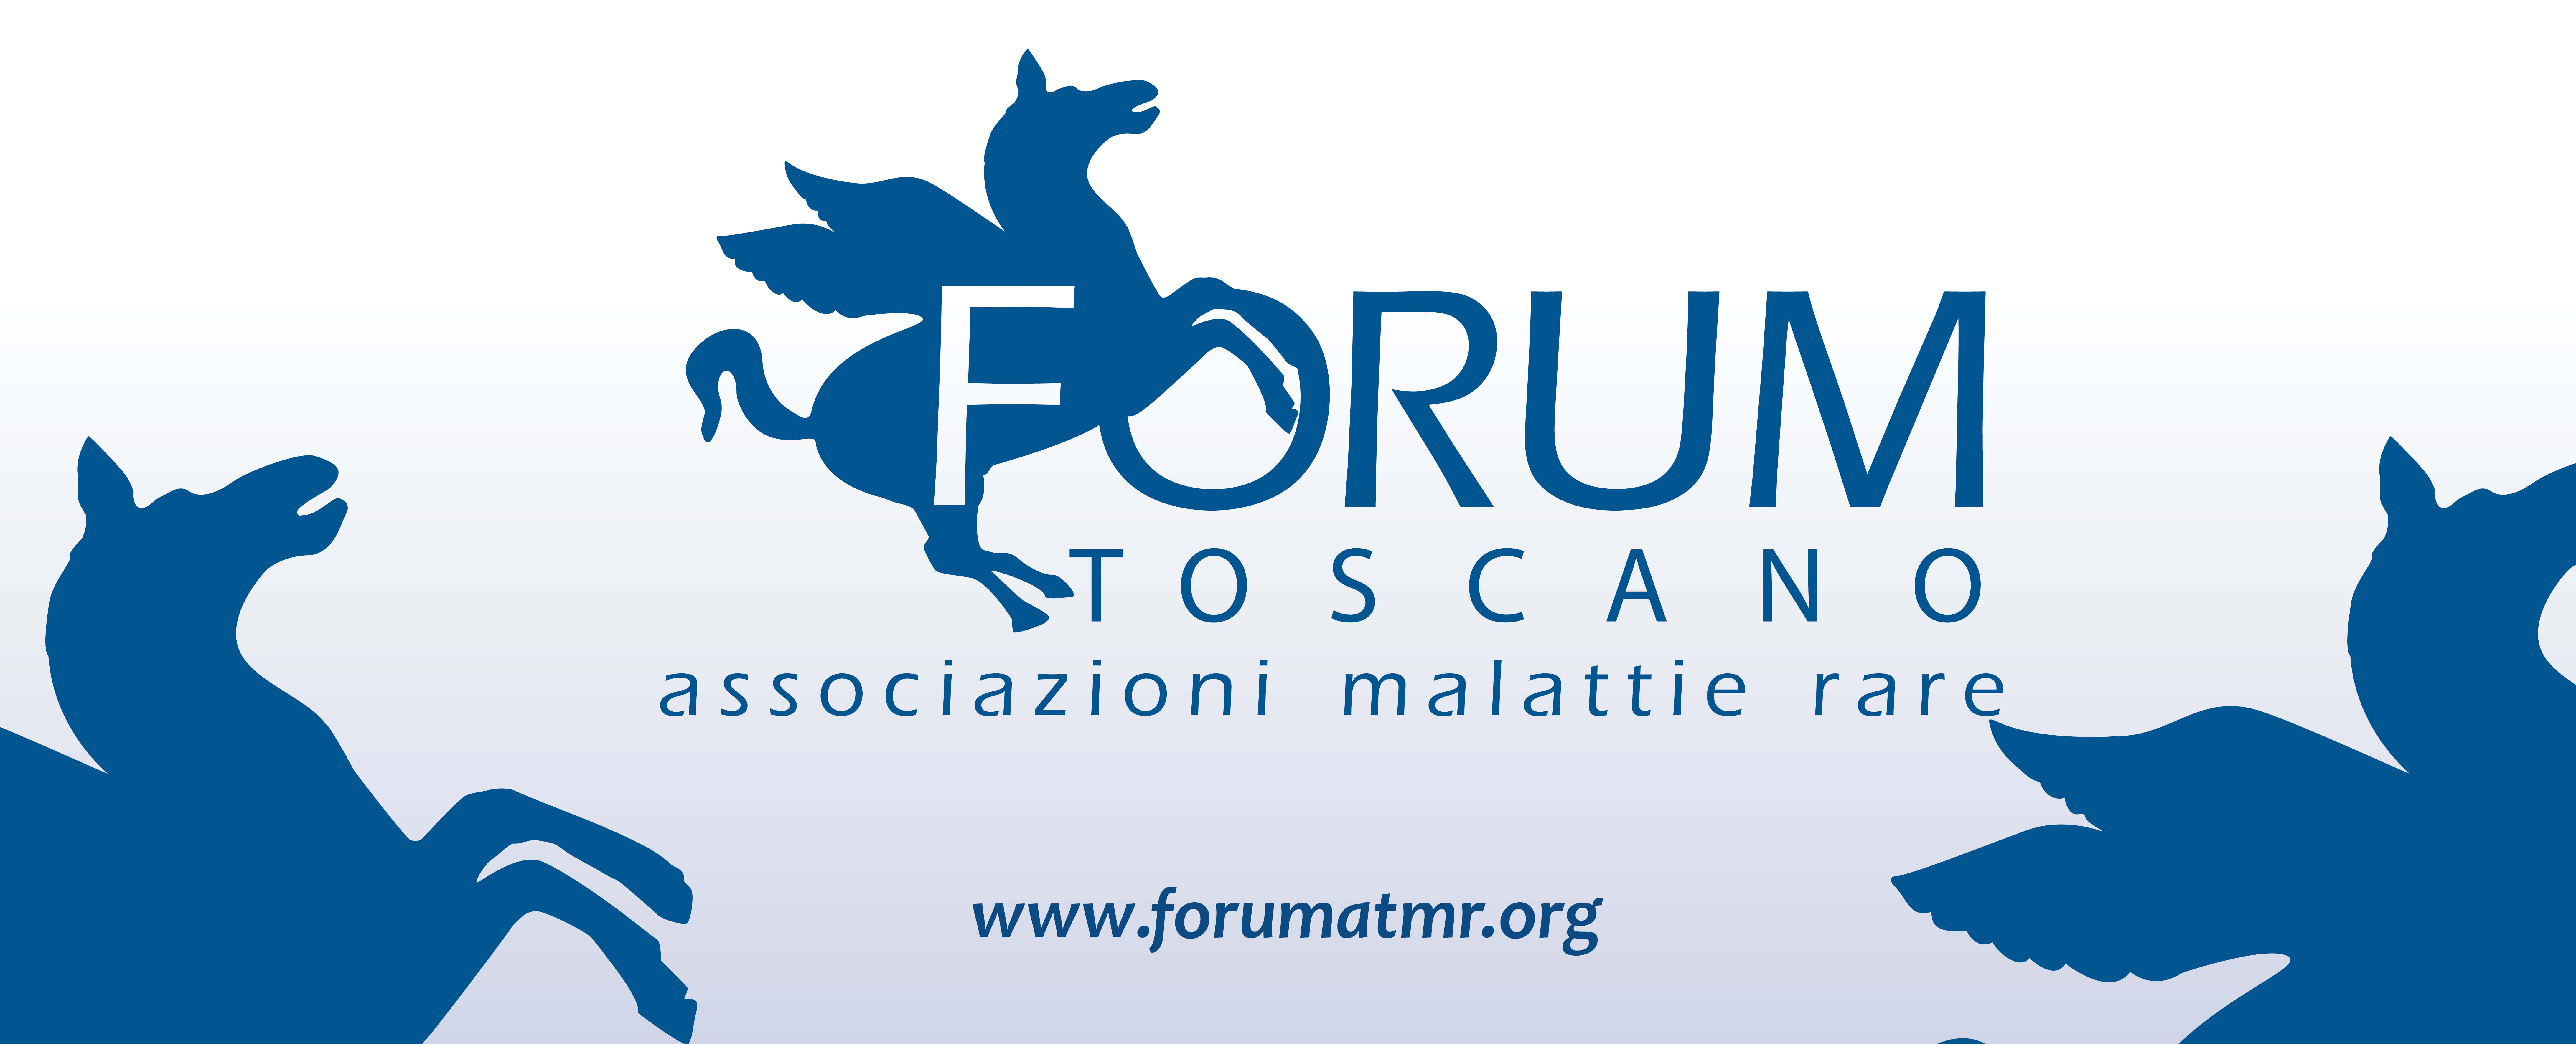 Forum Toscano Associazioni Malattie Rare